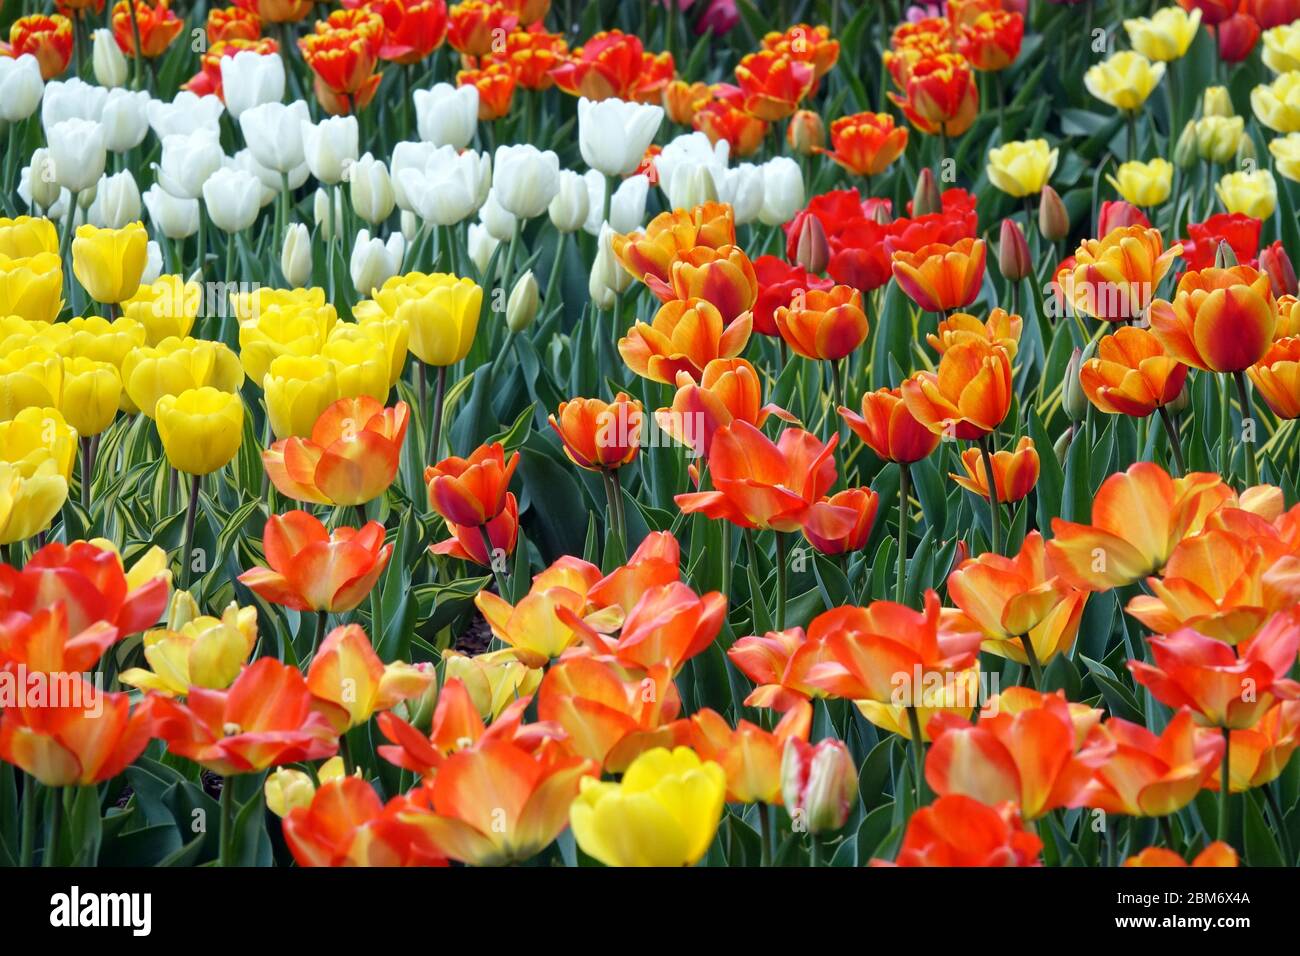 Bunte Tulpen Garten Blumenbeet Orange-Gelb-Mischung Blumen mischen Orange-Gelb-Weiß Stockfoto